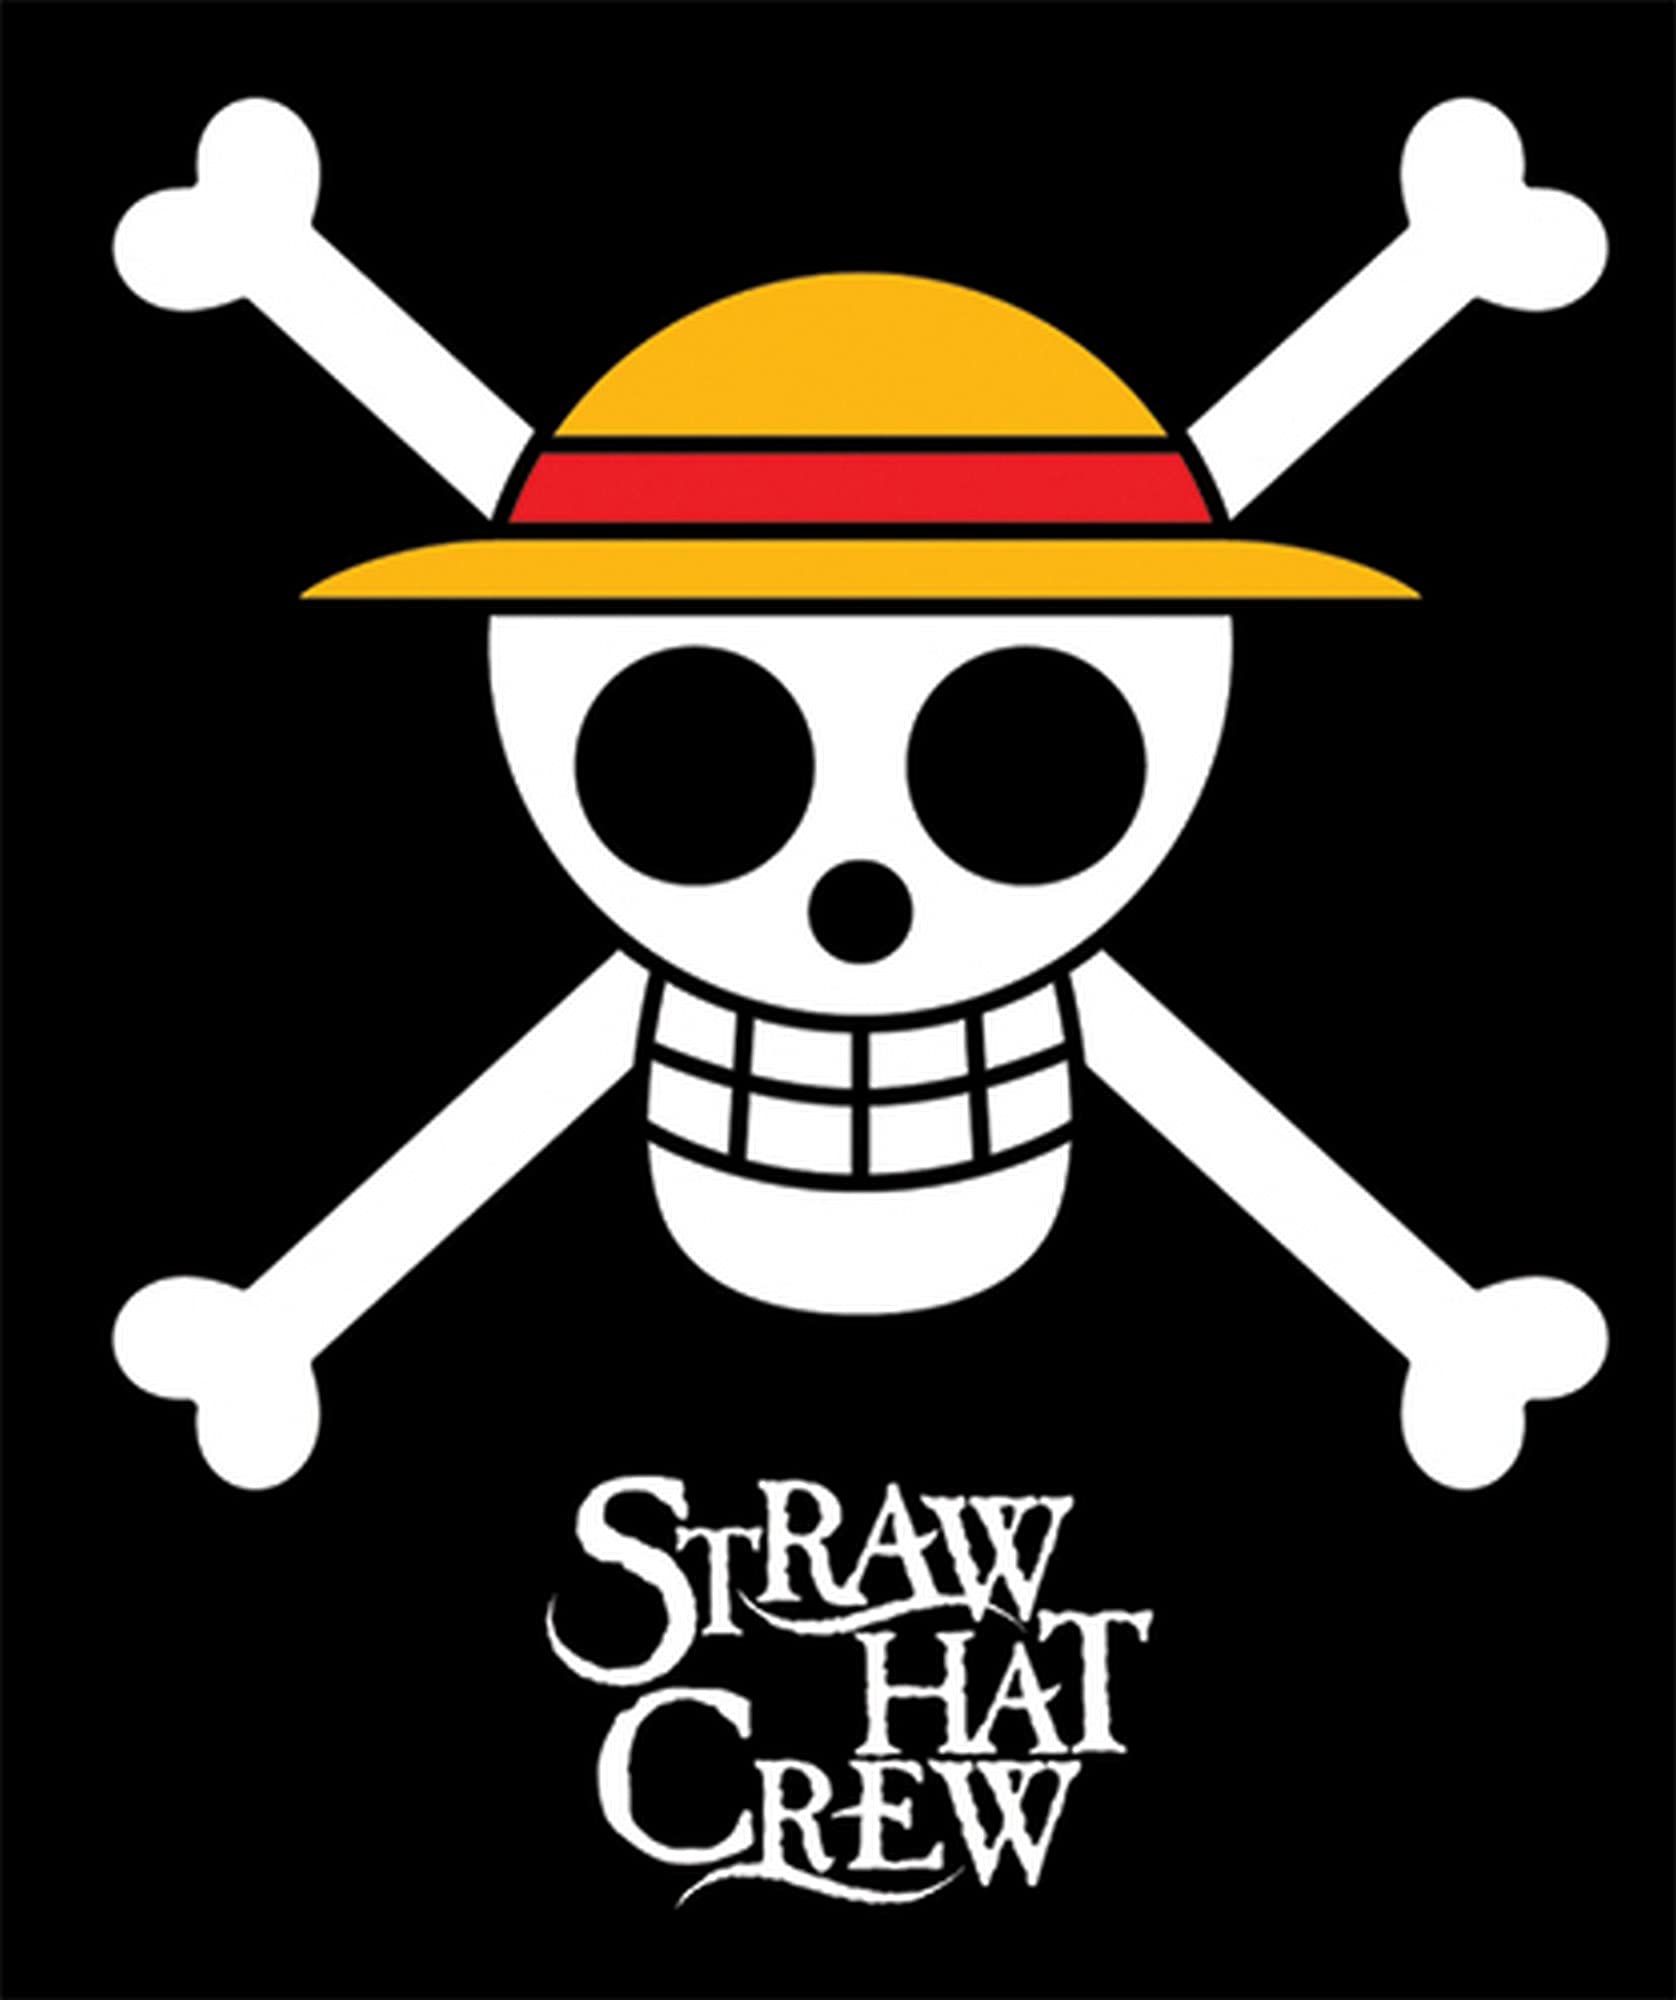 Hình logo băng hải tặc Mũ Rơm ngầu chất nhất